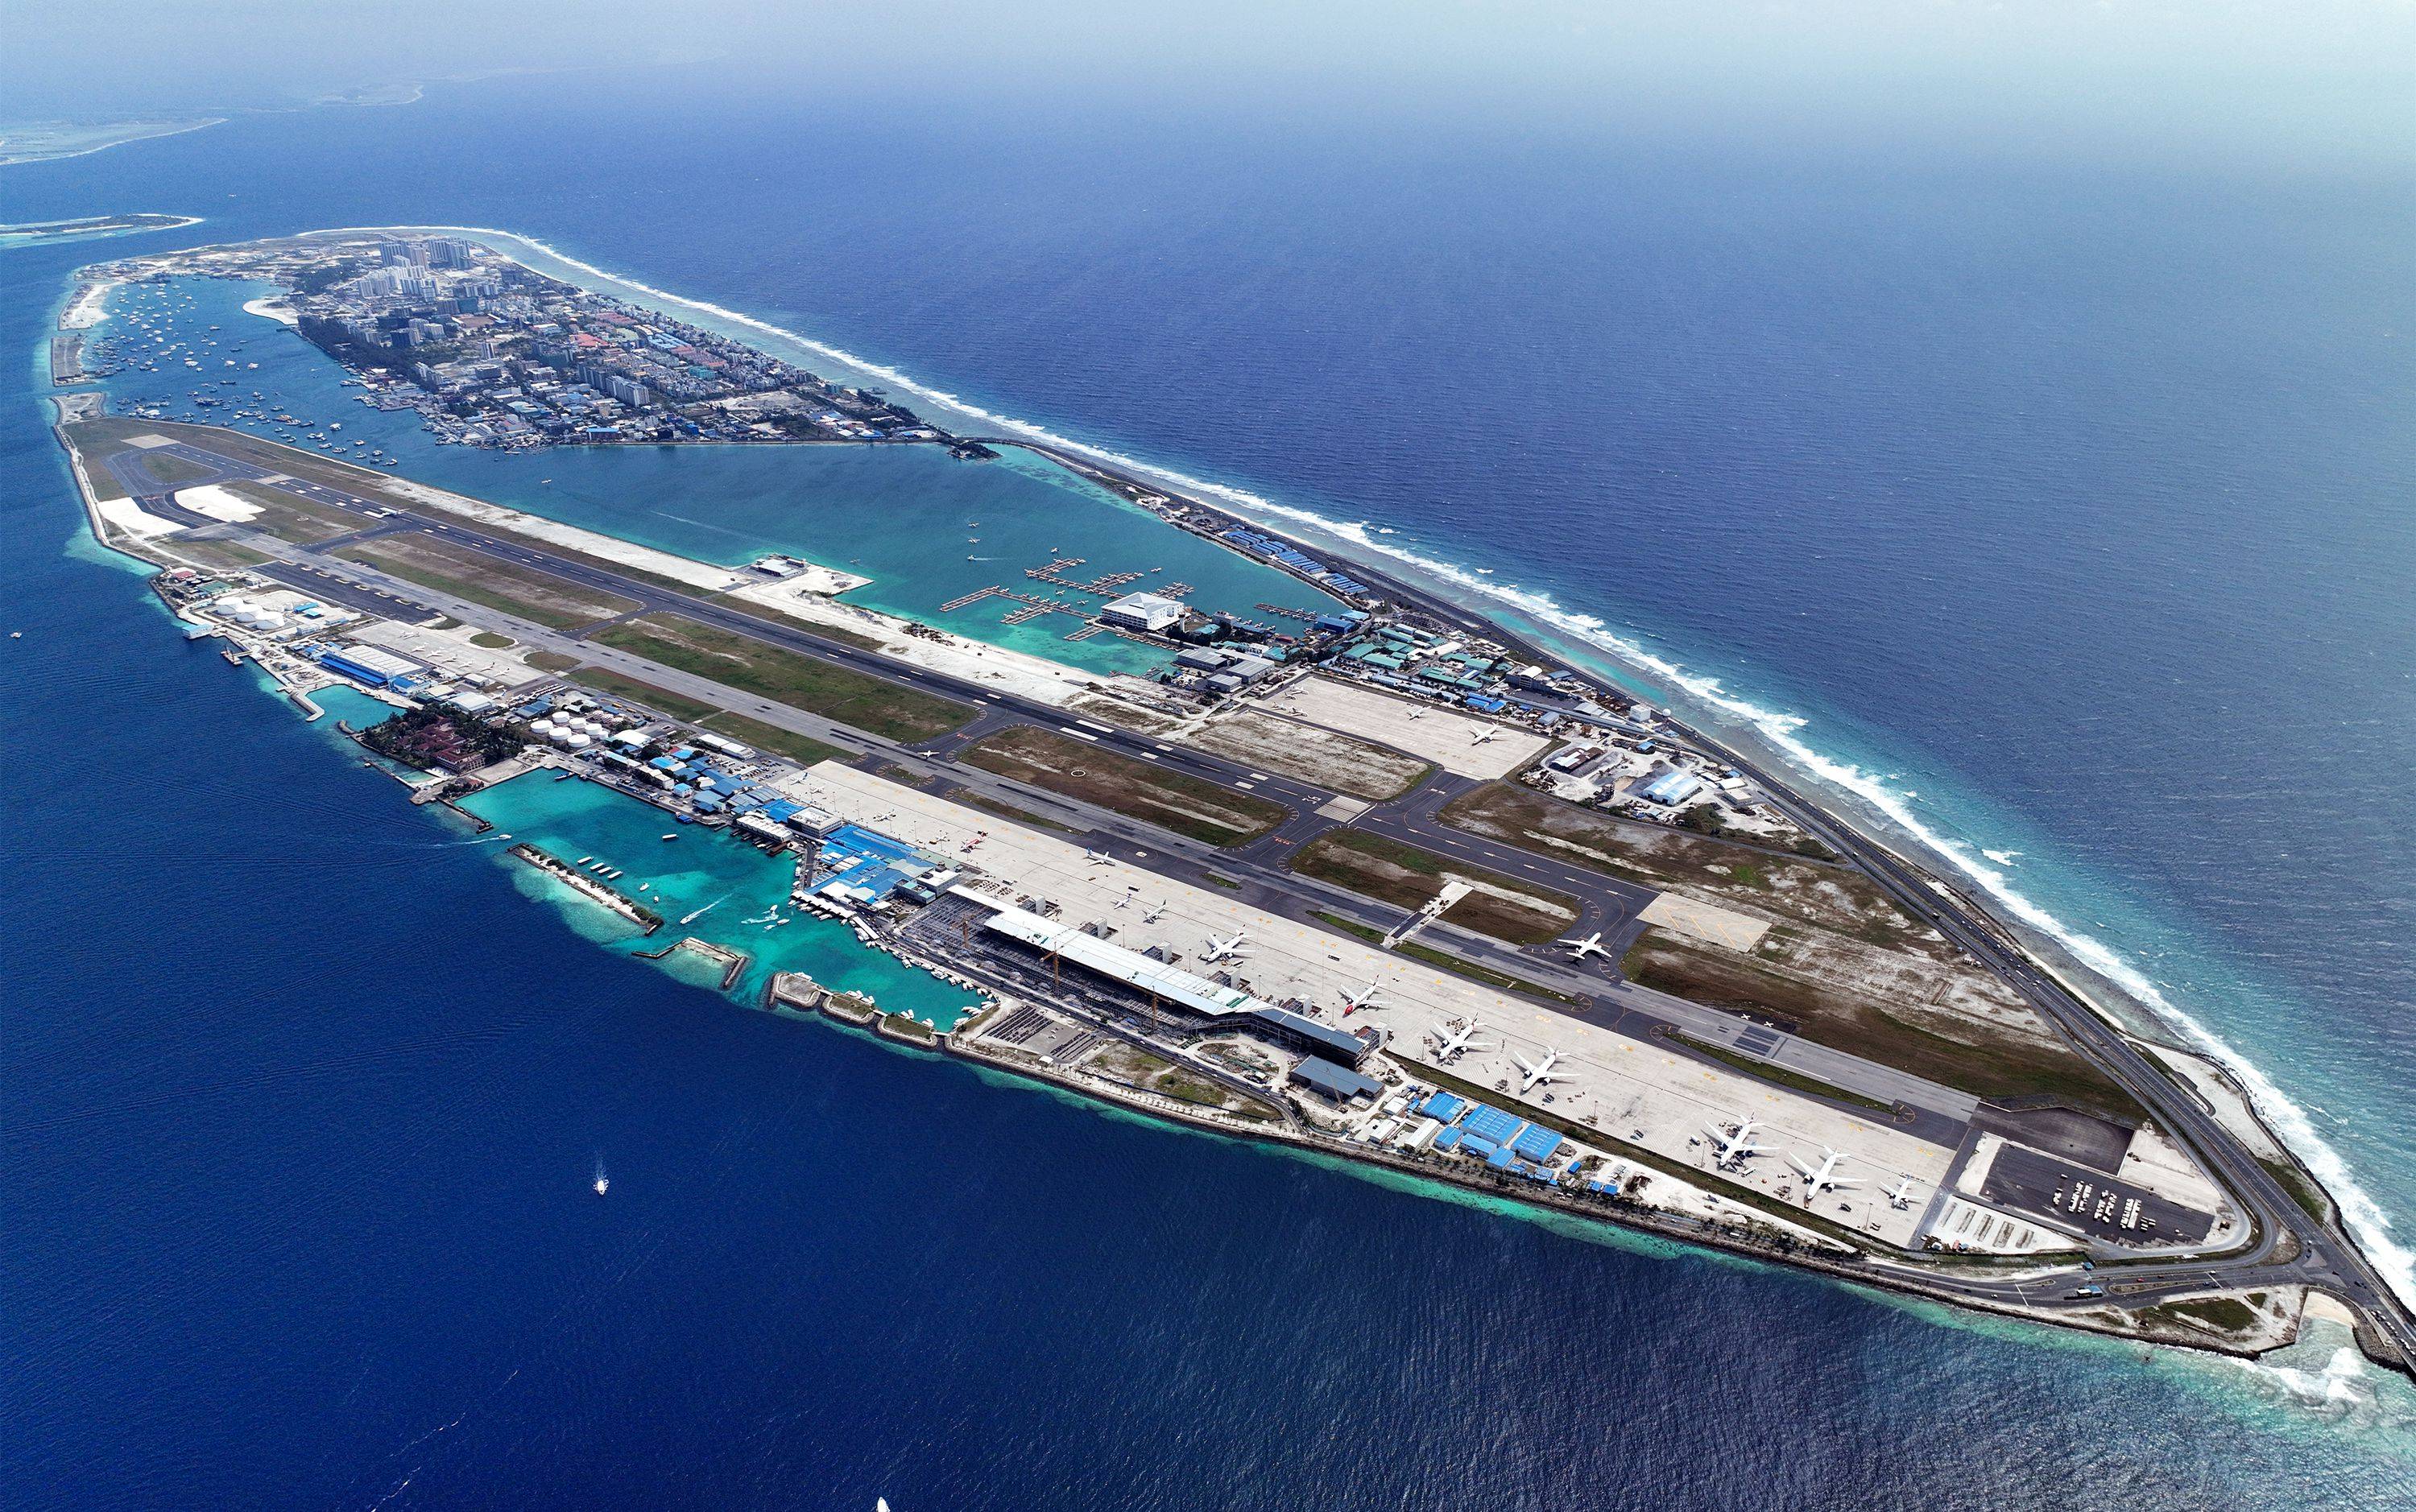 马尔代夫维拉纳国际机场改扩建项目是北京城建集团在马尔代夫承揽的首